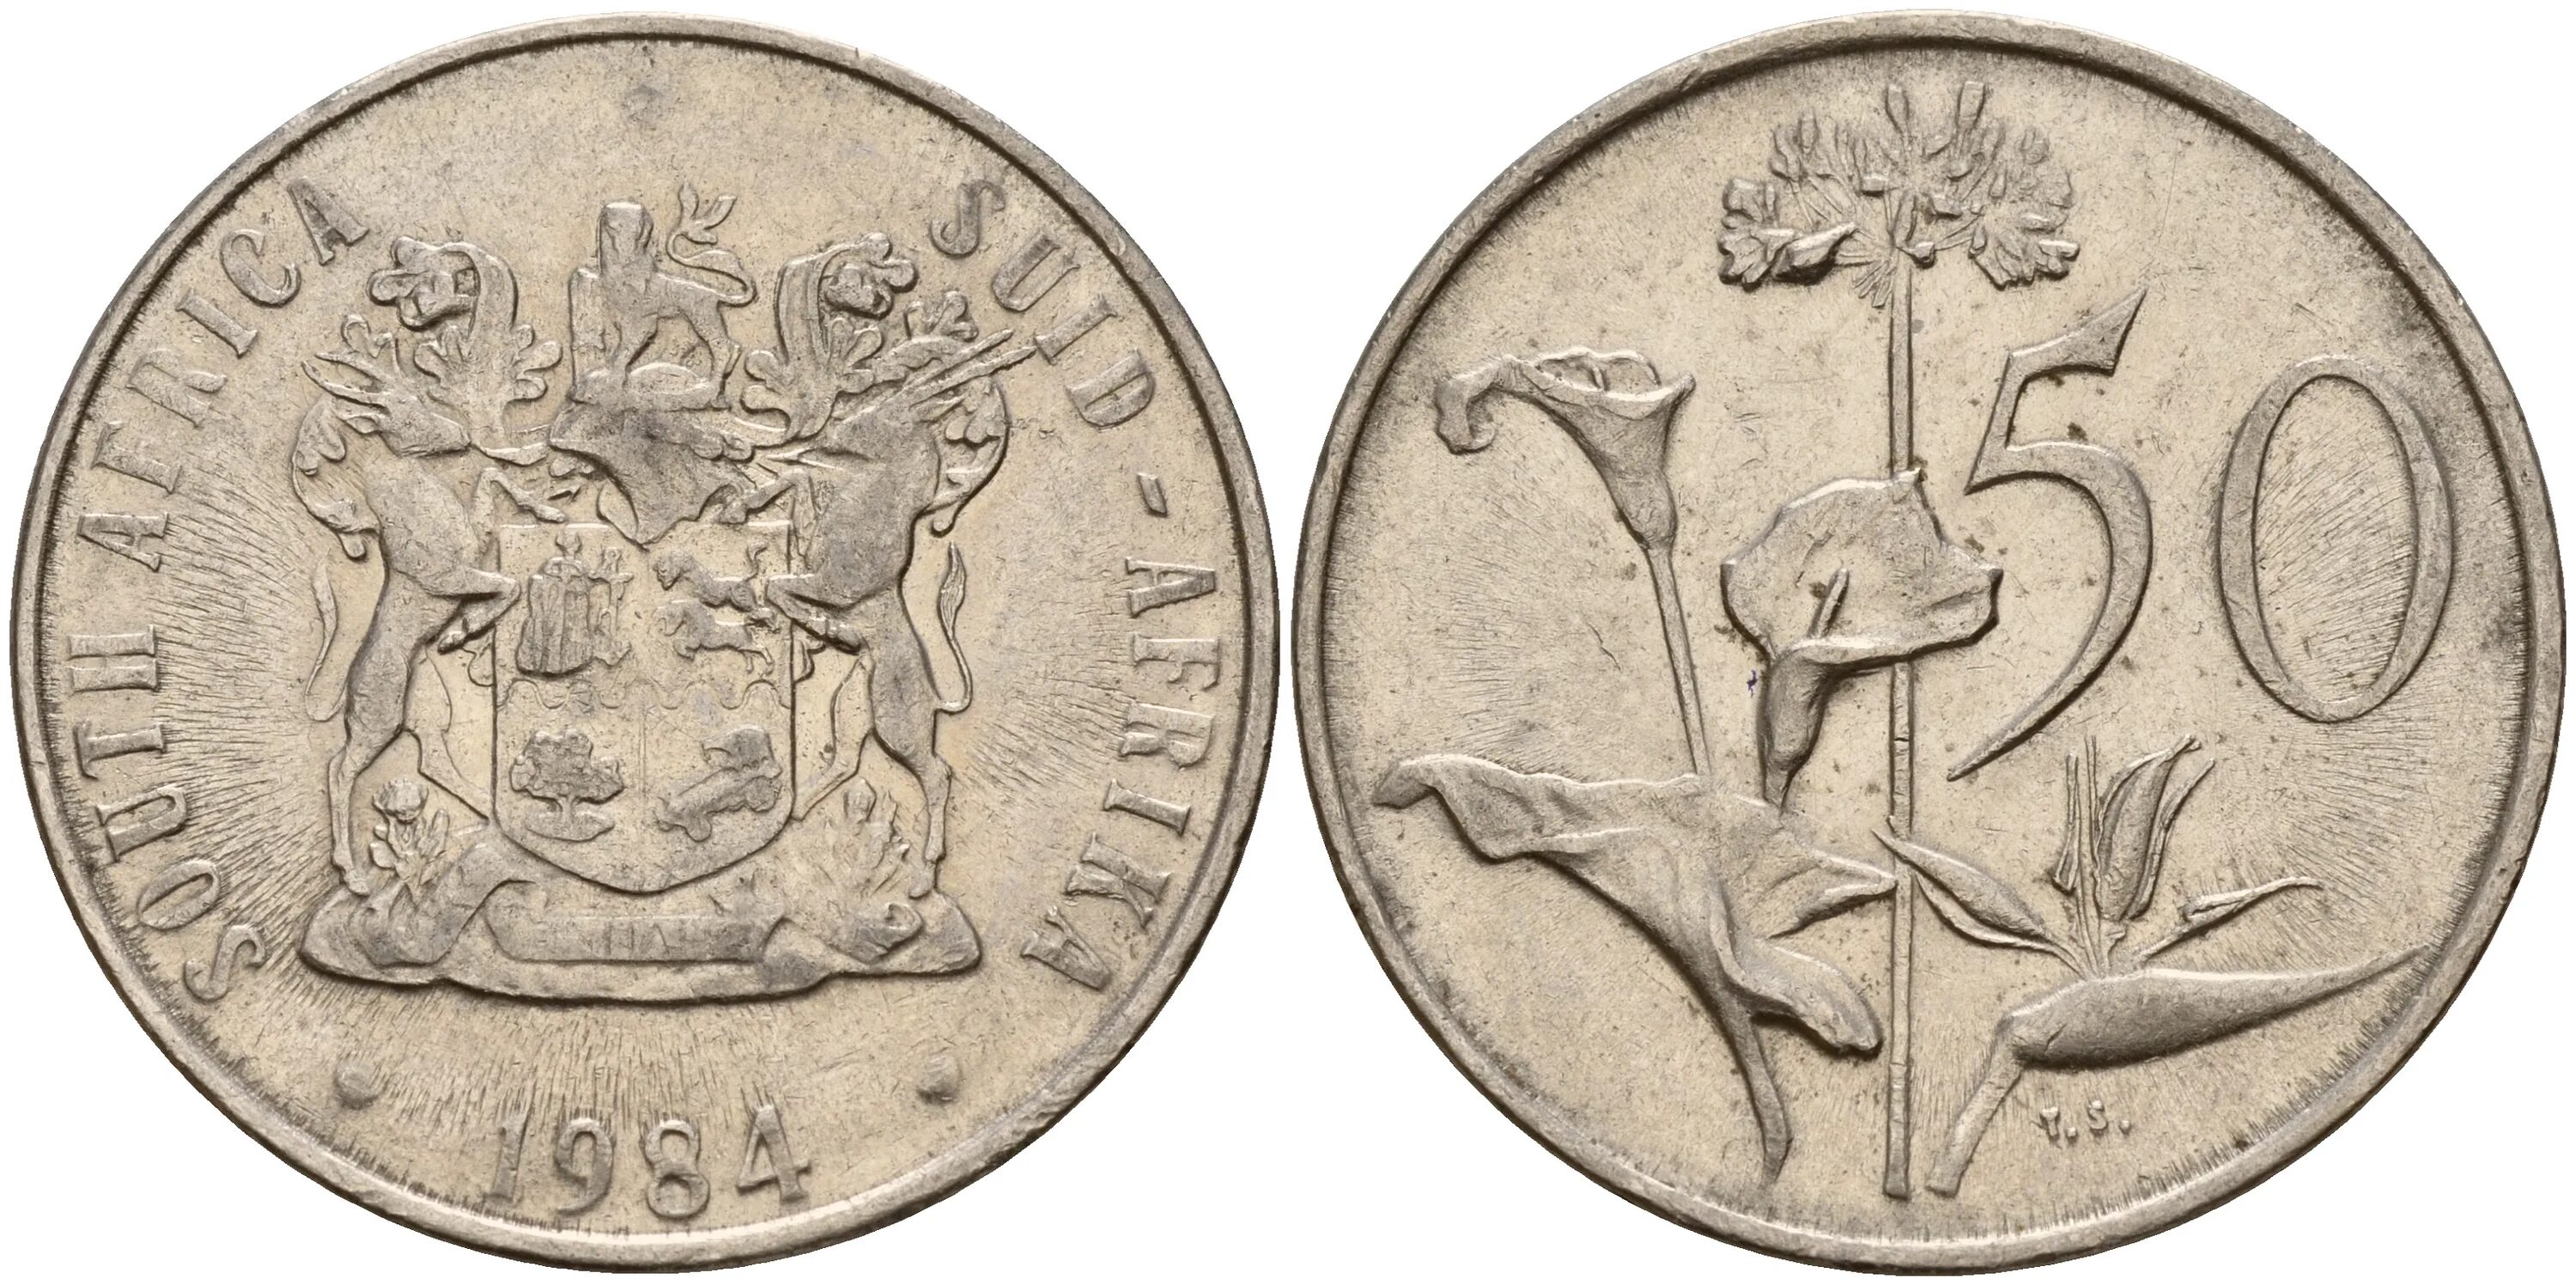 Mnt монета. 1 Крона Чехословакия. Монета 20 центов ЮАР. ЮАР монета 1971 20 центов. ЮАР 10 центов 2000 год.